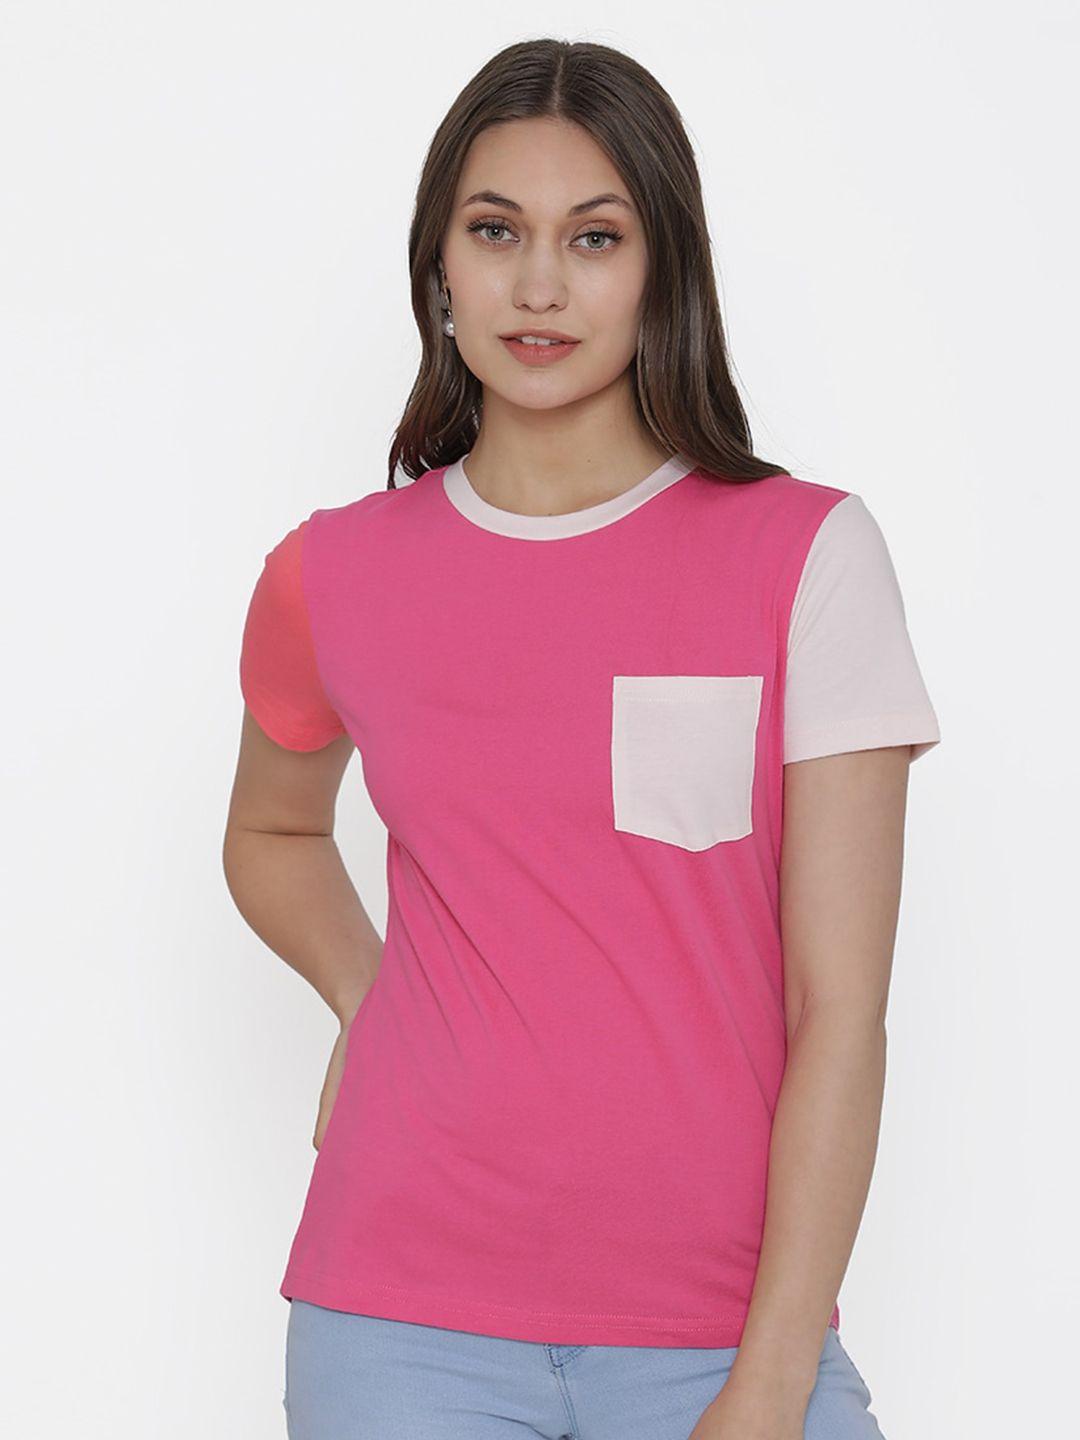 door74 women pink cotton t-shirt